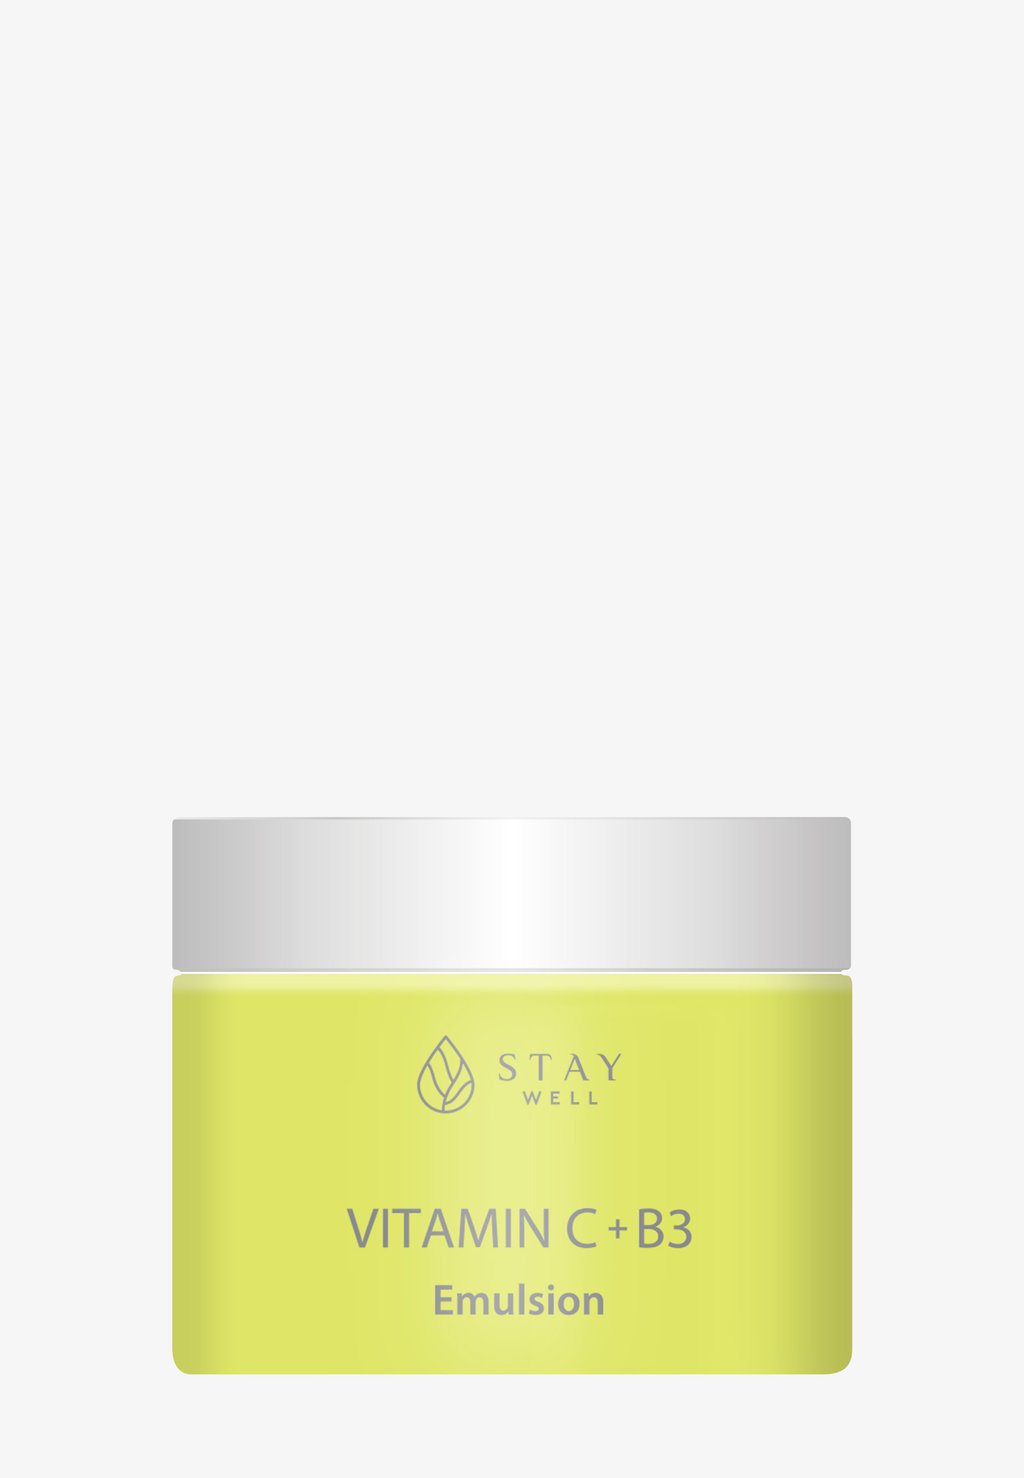 Дневной крем Stay Well Vitamin C+B3 Emulsion Cream STAY Well цена и фото